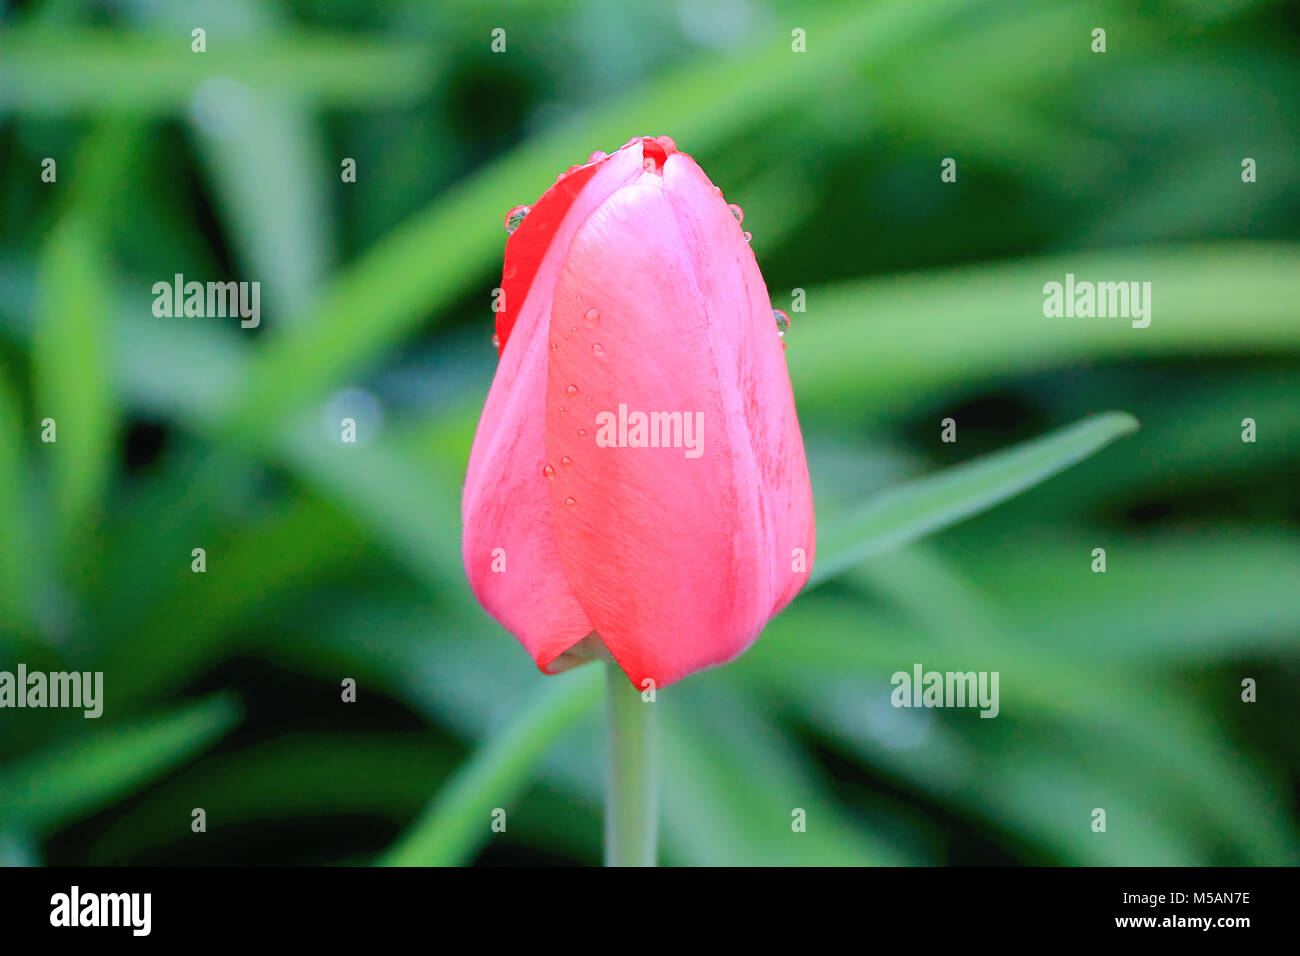 Immagine di un unico tulip su sfondo verde Foto Stock